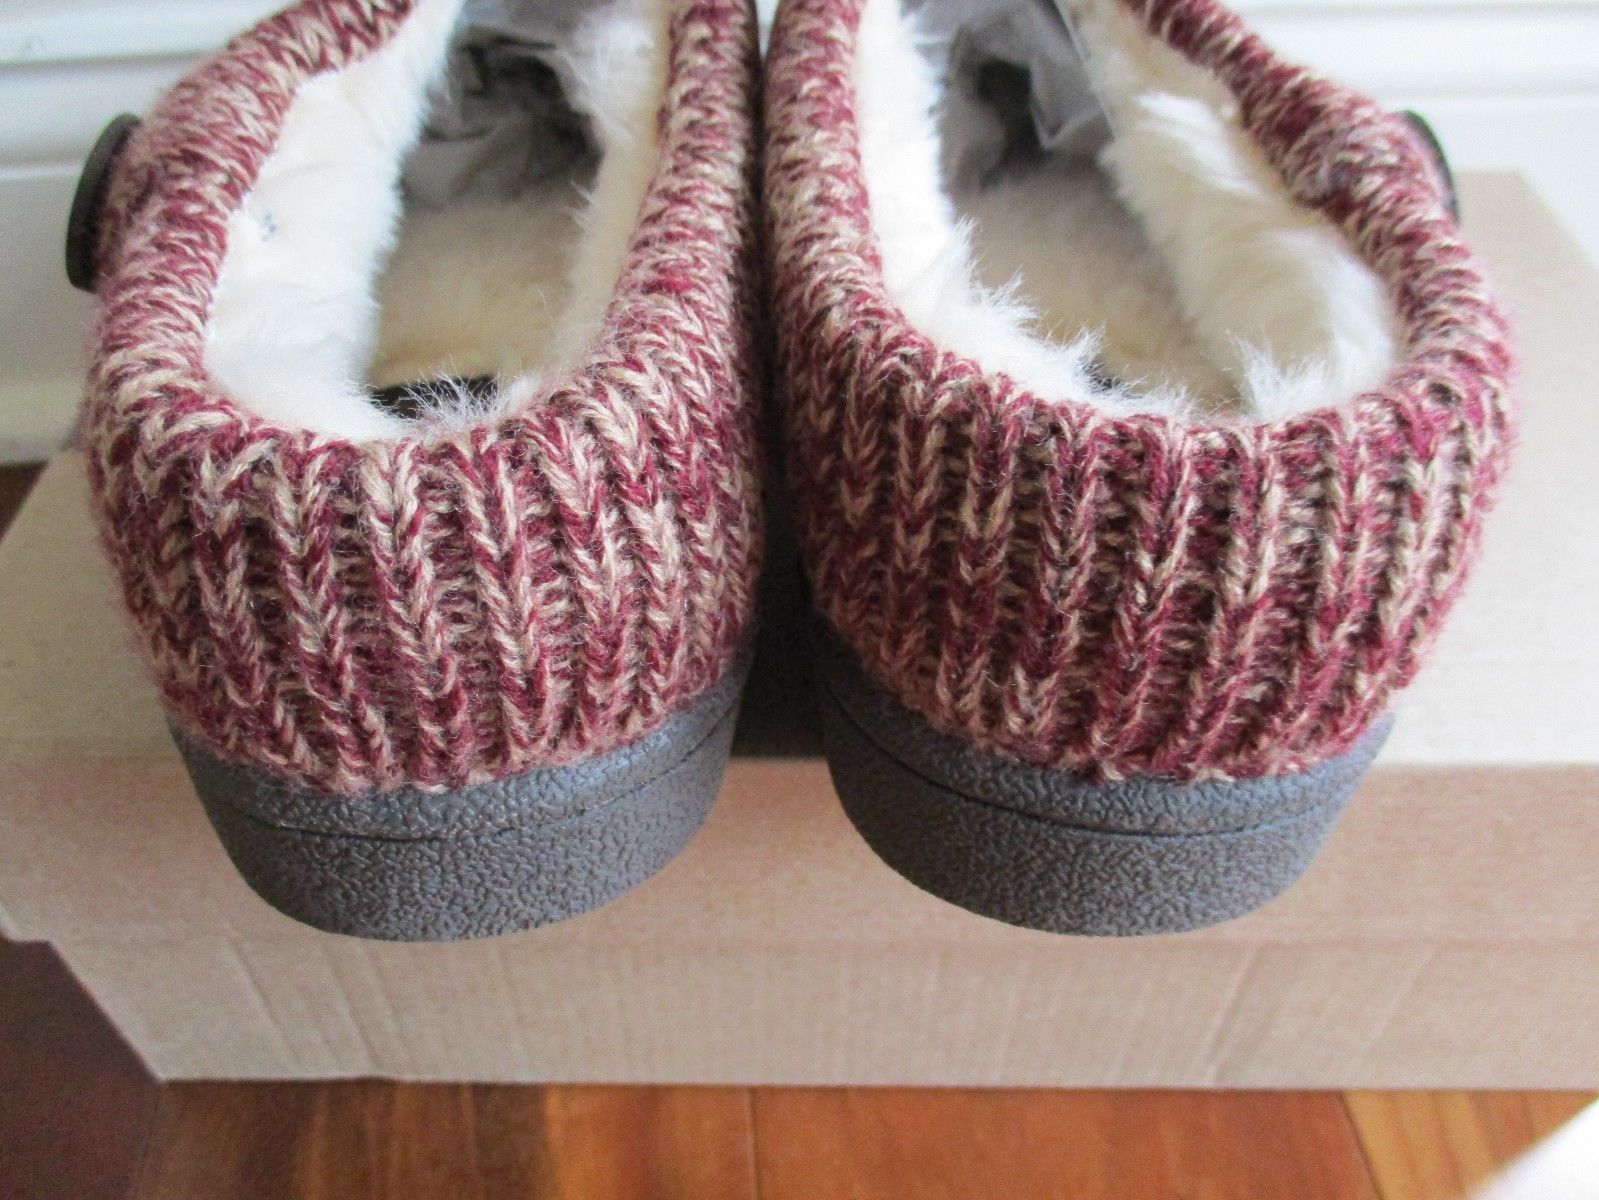 clarks women's indoor outdoor slippers